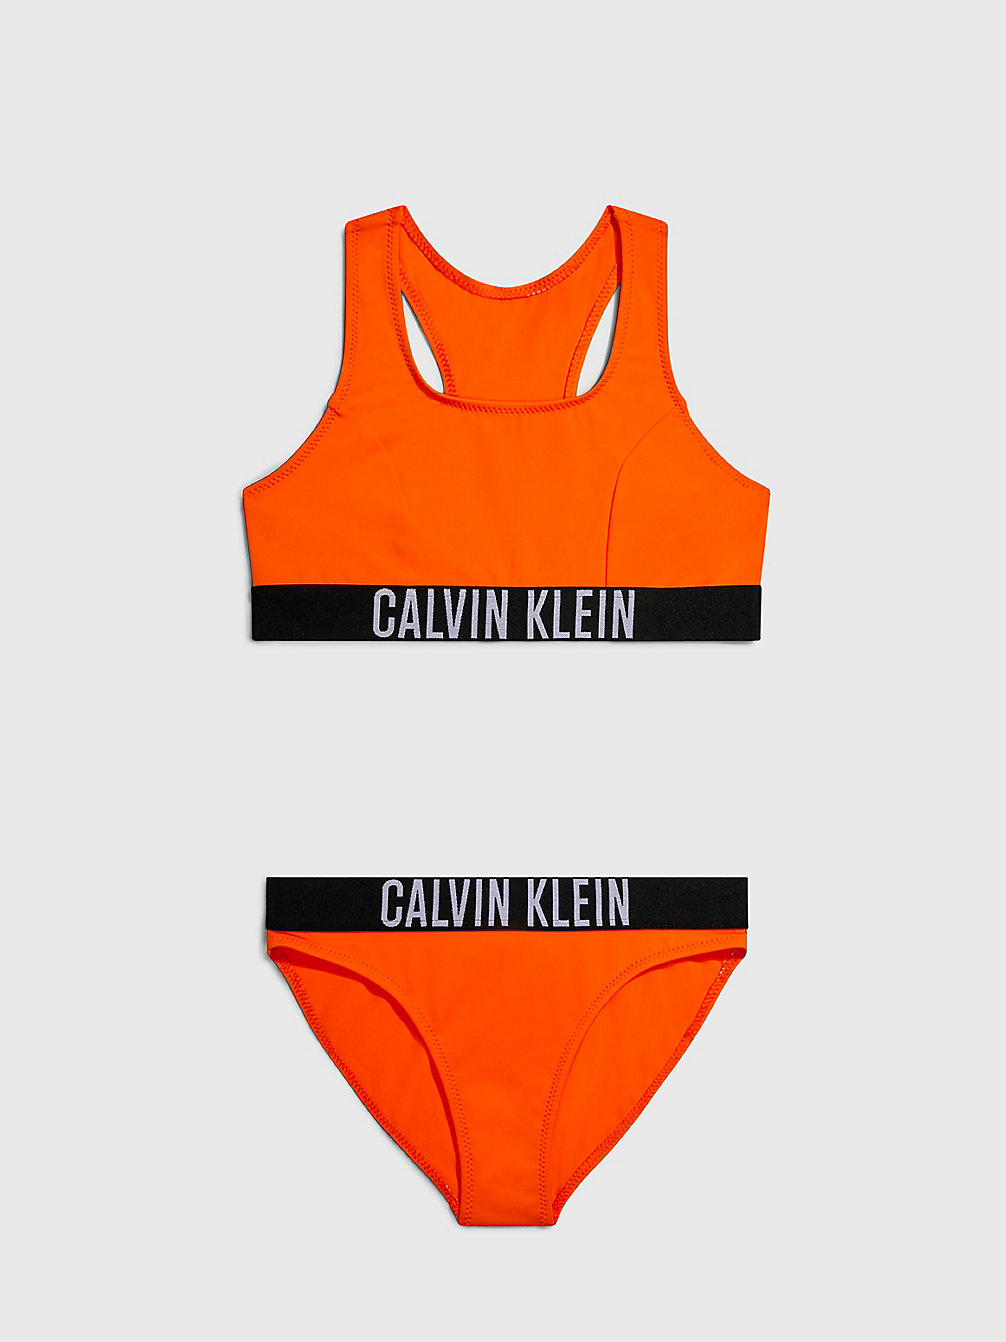 VIVID ORANGE Bikini-Set Mit Bralette Für Mädchen - Intense Power undefined girls Calvin Klein